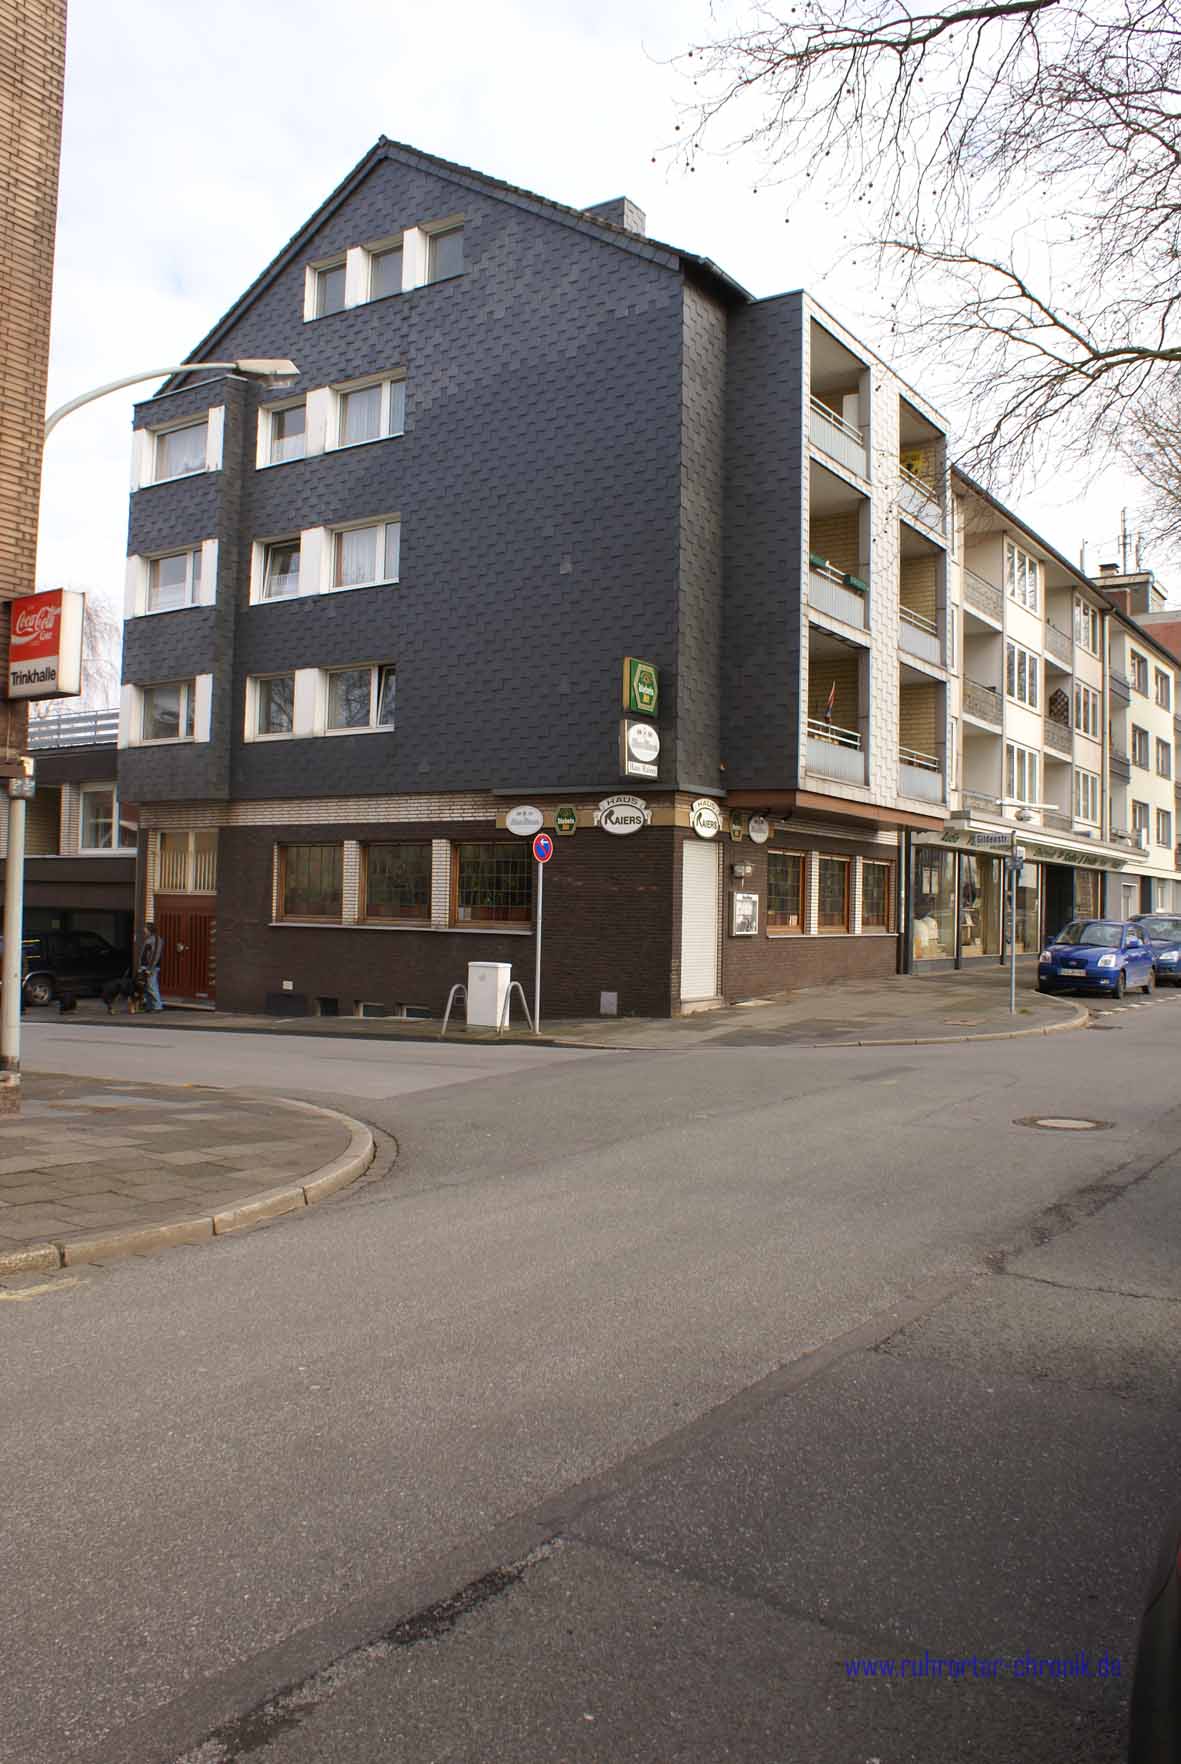 Gildenstraße bzw. Weidenstraße 13 : Jahr: 18.02.2009